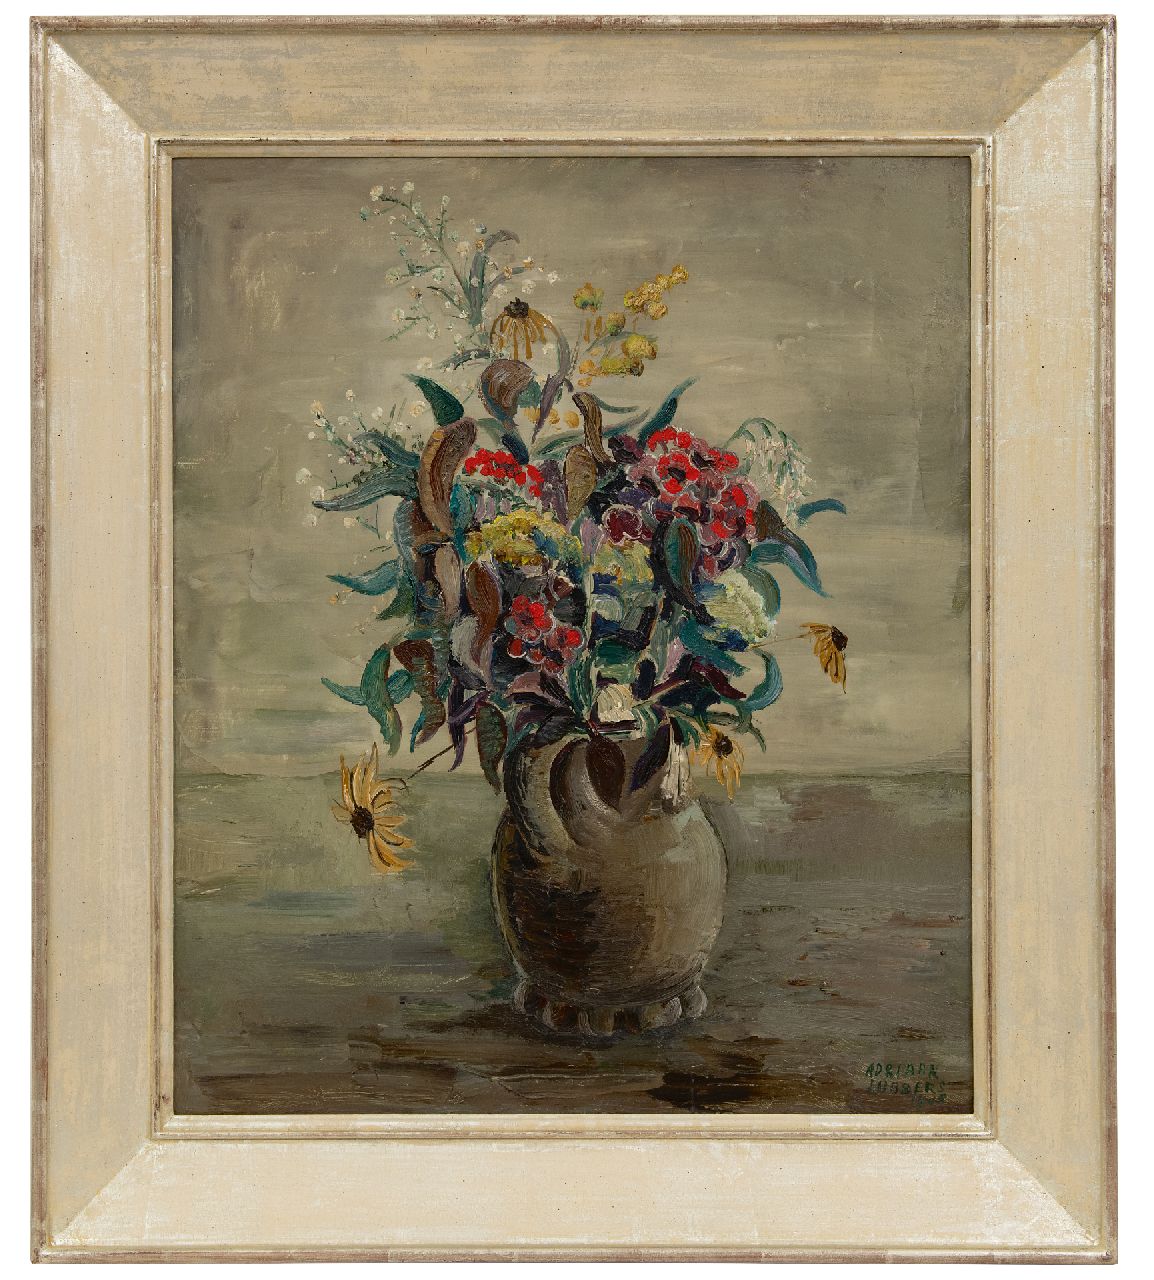 Lubbers A.  | Adriaan Lubbers | Schilderijen te koop aangeboden | Bloemstilleven in aardewerken vaas, olieverf op doek 60,0 x 50,3 cm, gesigneerd rechtsonder en gedateerd 1946